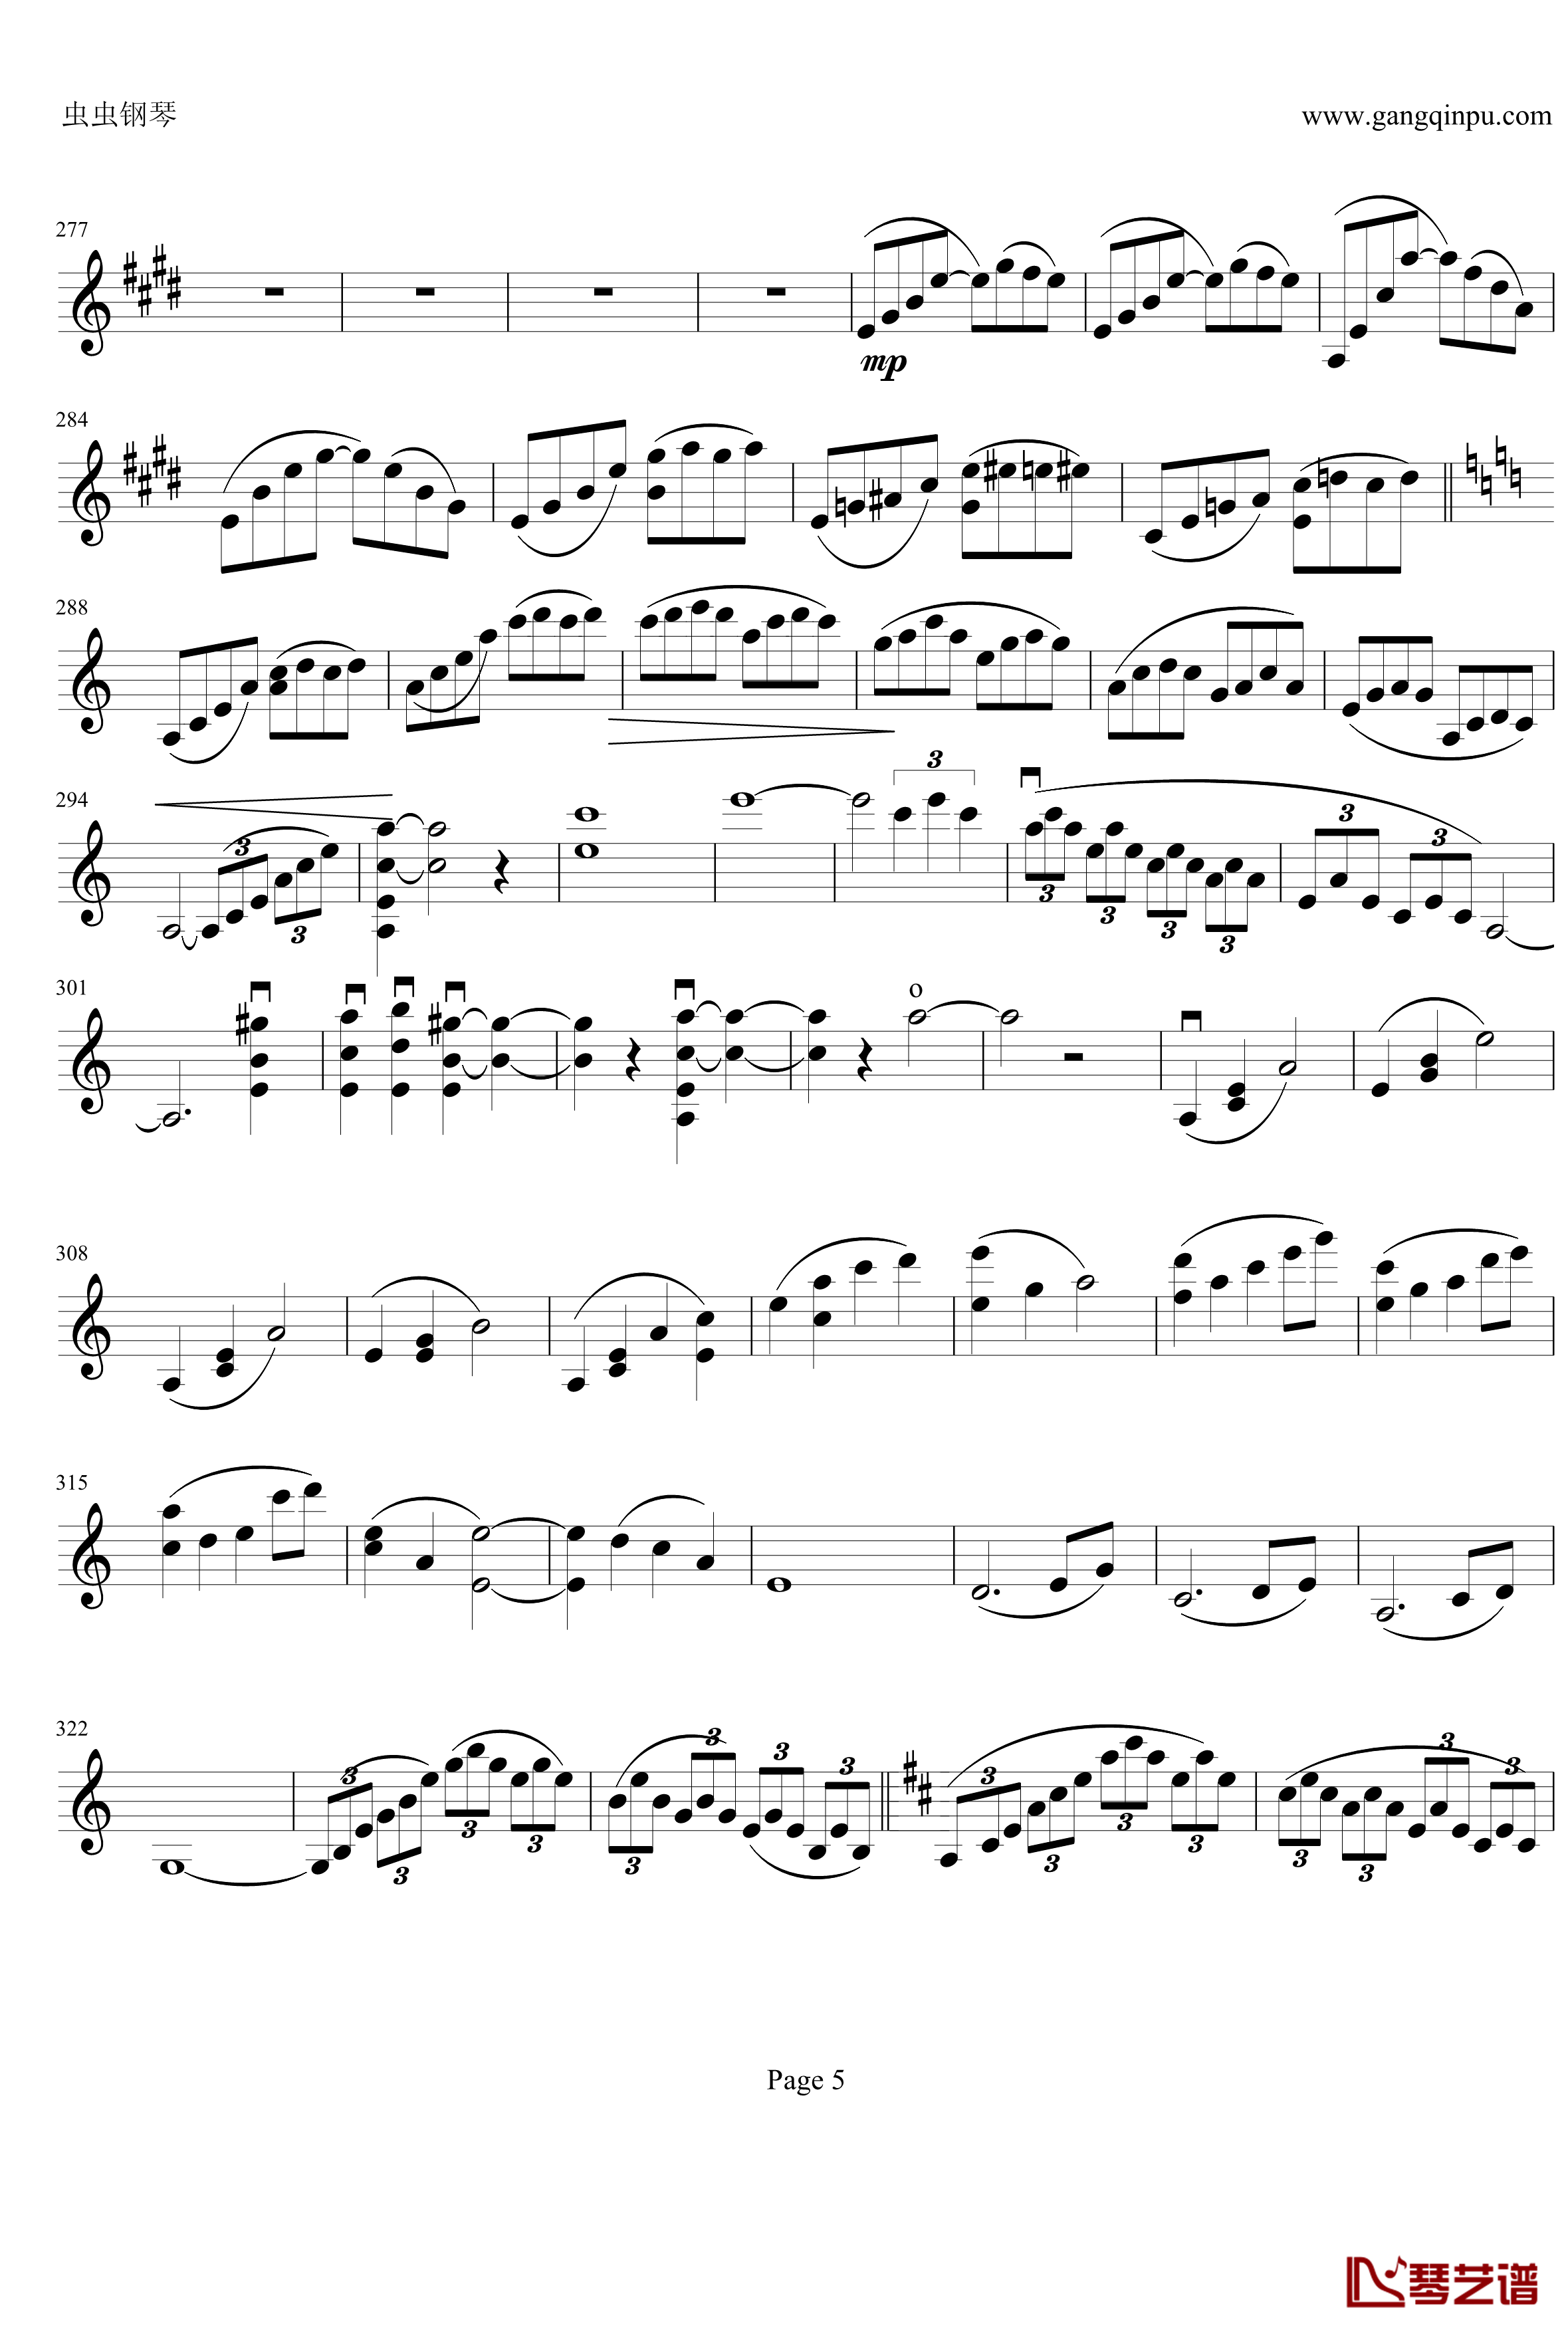 云南风情钢琴谱-第一乐章-b小调小提琴协奏曲-项道荣5